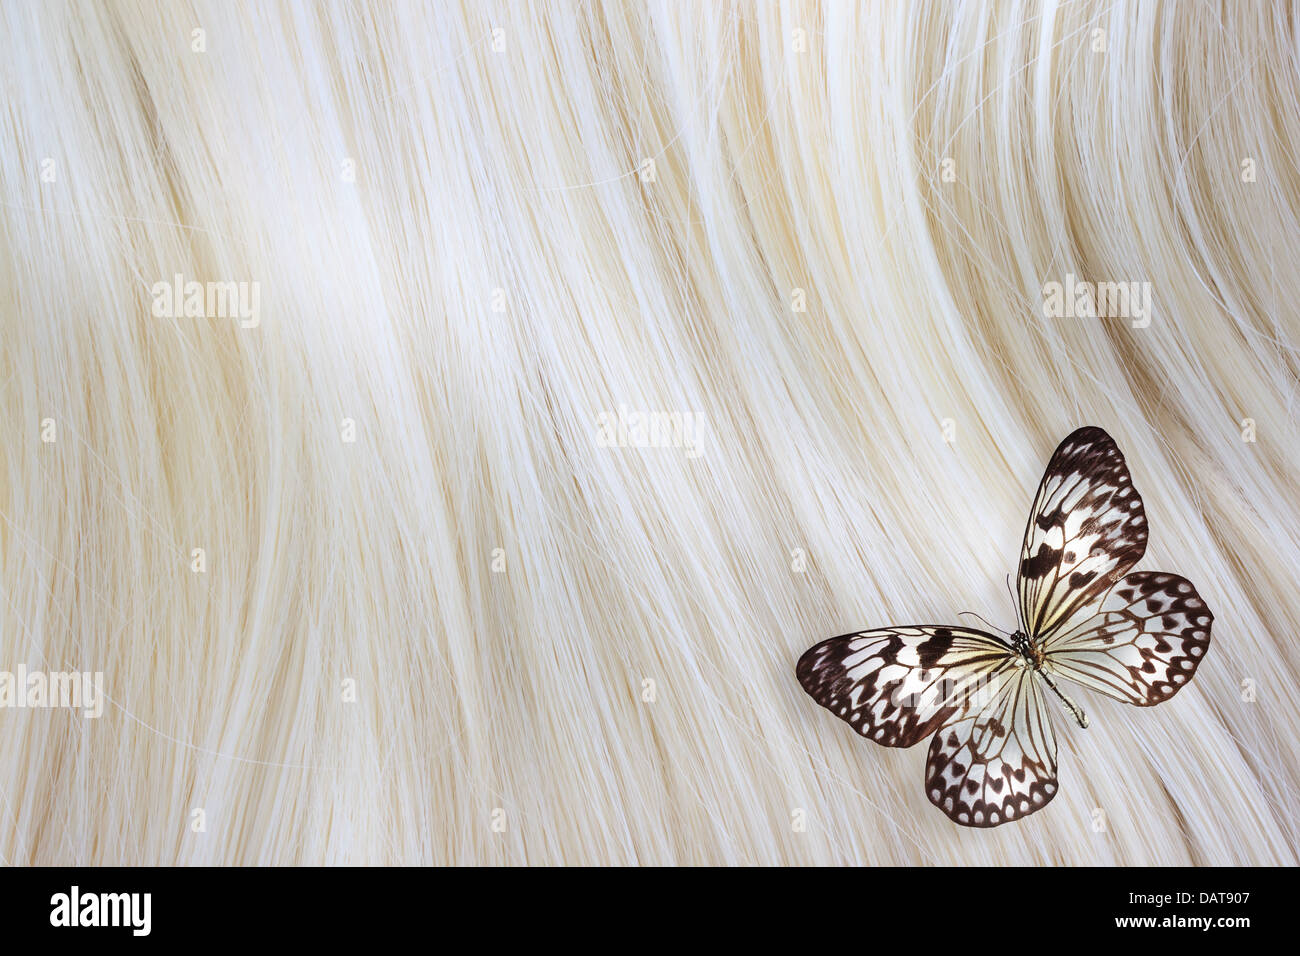 Gesundes blondes Haar mit einem Papier-Drachen Schmetterling - Nahaufnahme Bild Stockfoto